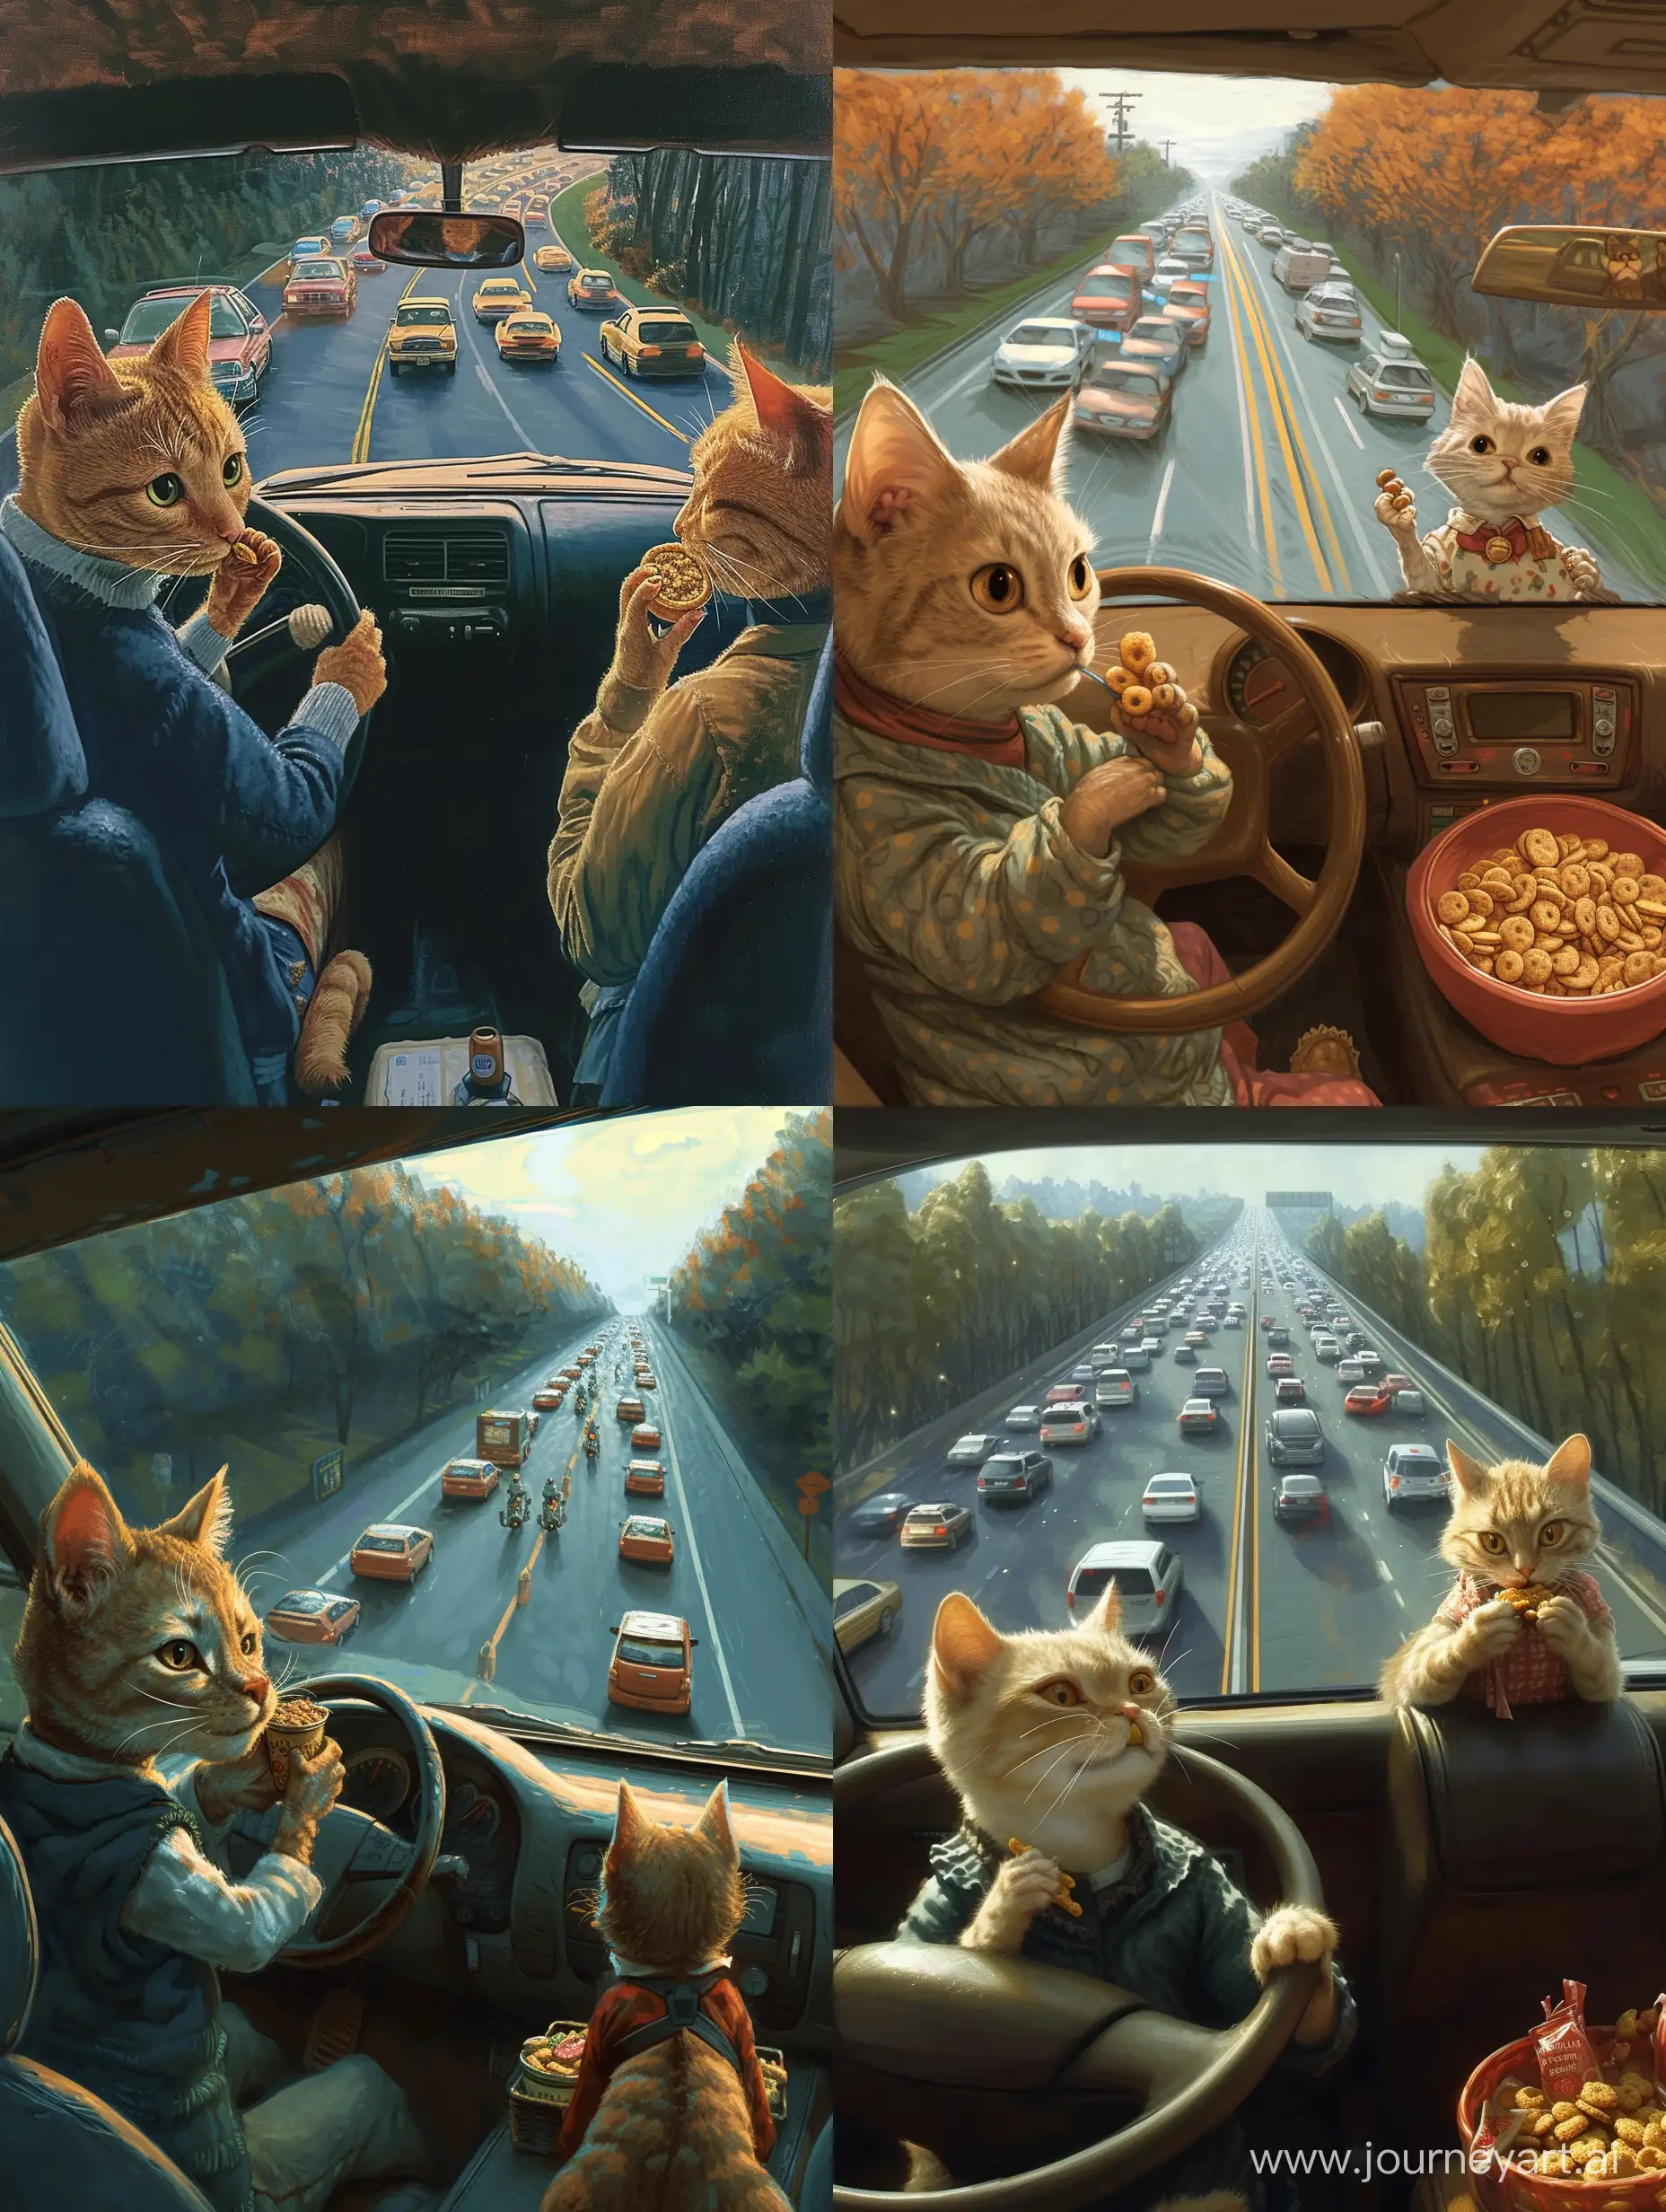 一只猫咪穿着衣服，开着车，另一只猫咪穿着坐在副驾驶上吃零食，从车子的后窗可以看到许多车子排着队，布满了这条路